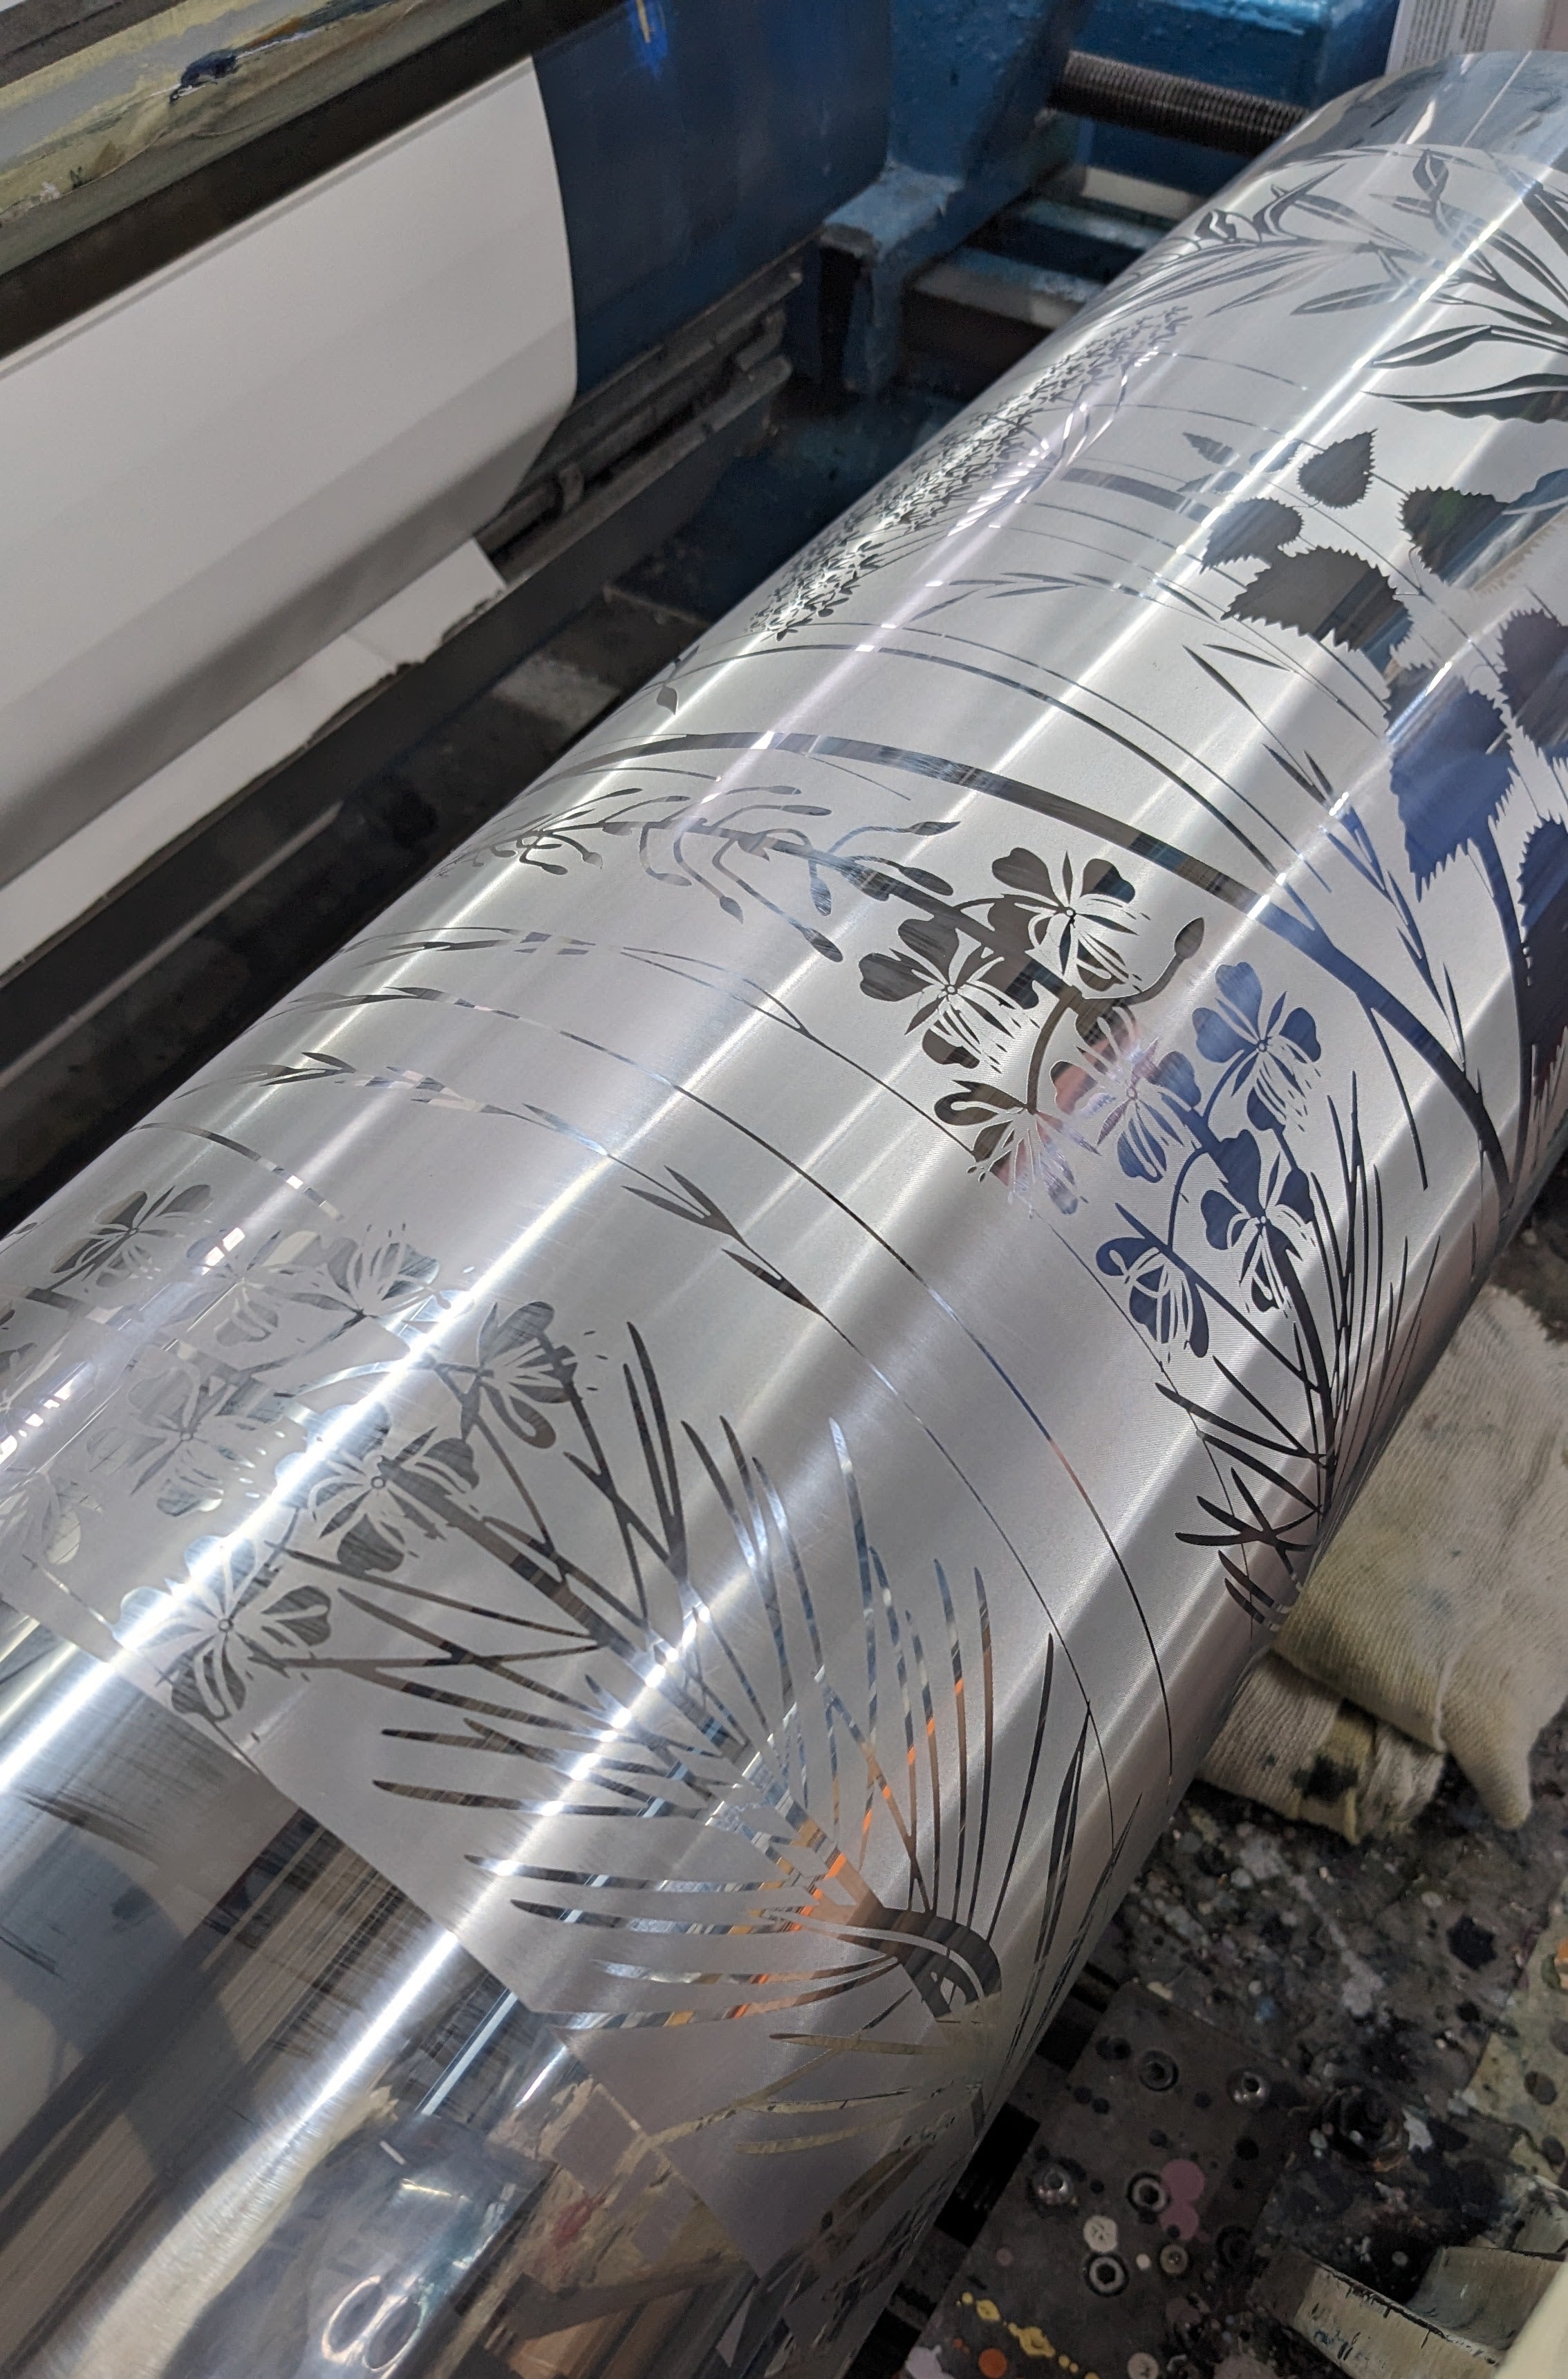 gravure cylinder with Wild Edge wallpaper design